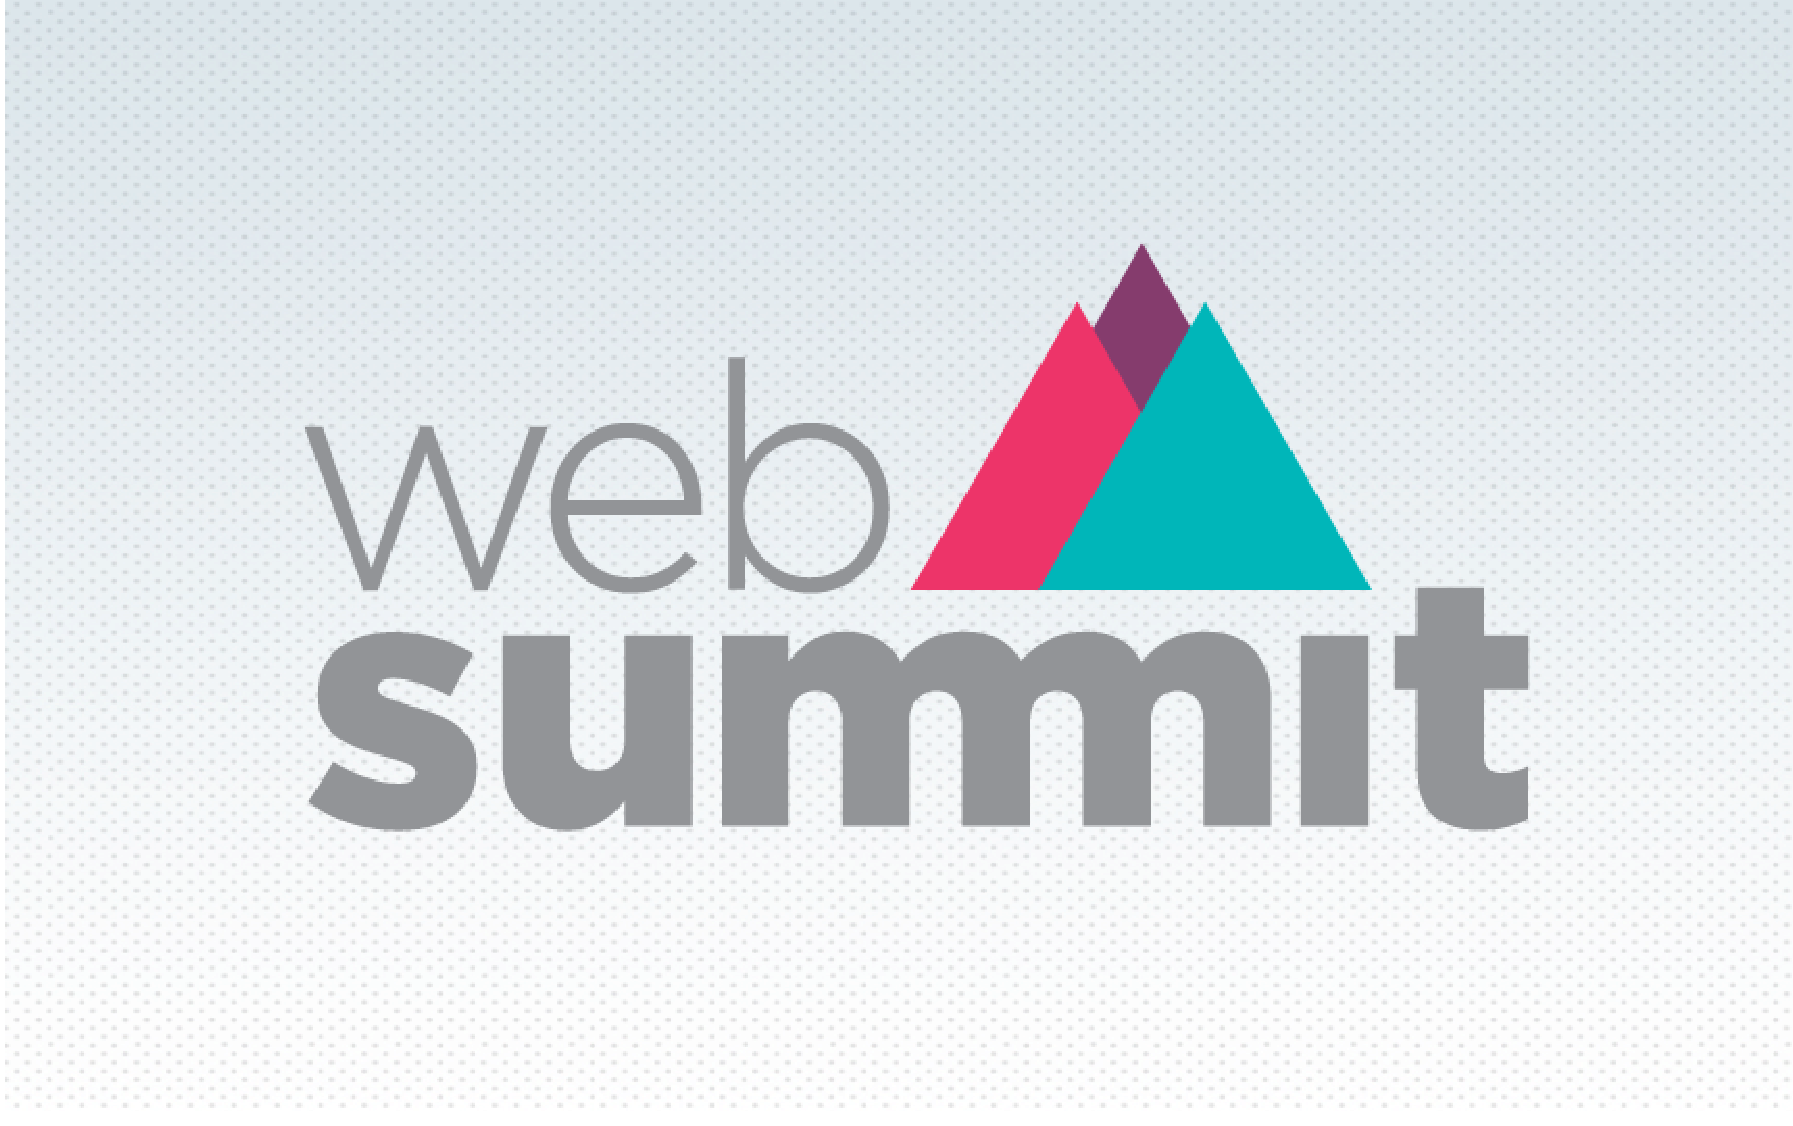 ClearCast 12 l Tendências Web Summit 2019